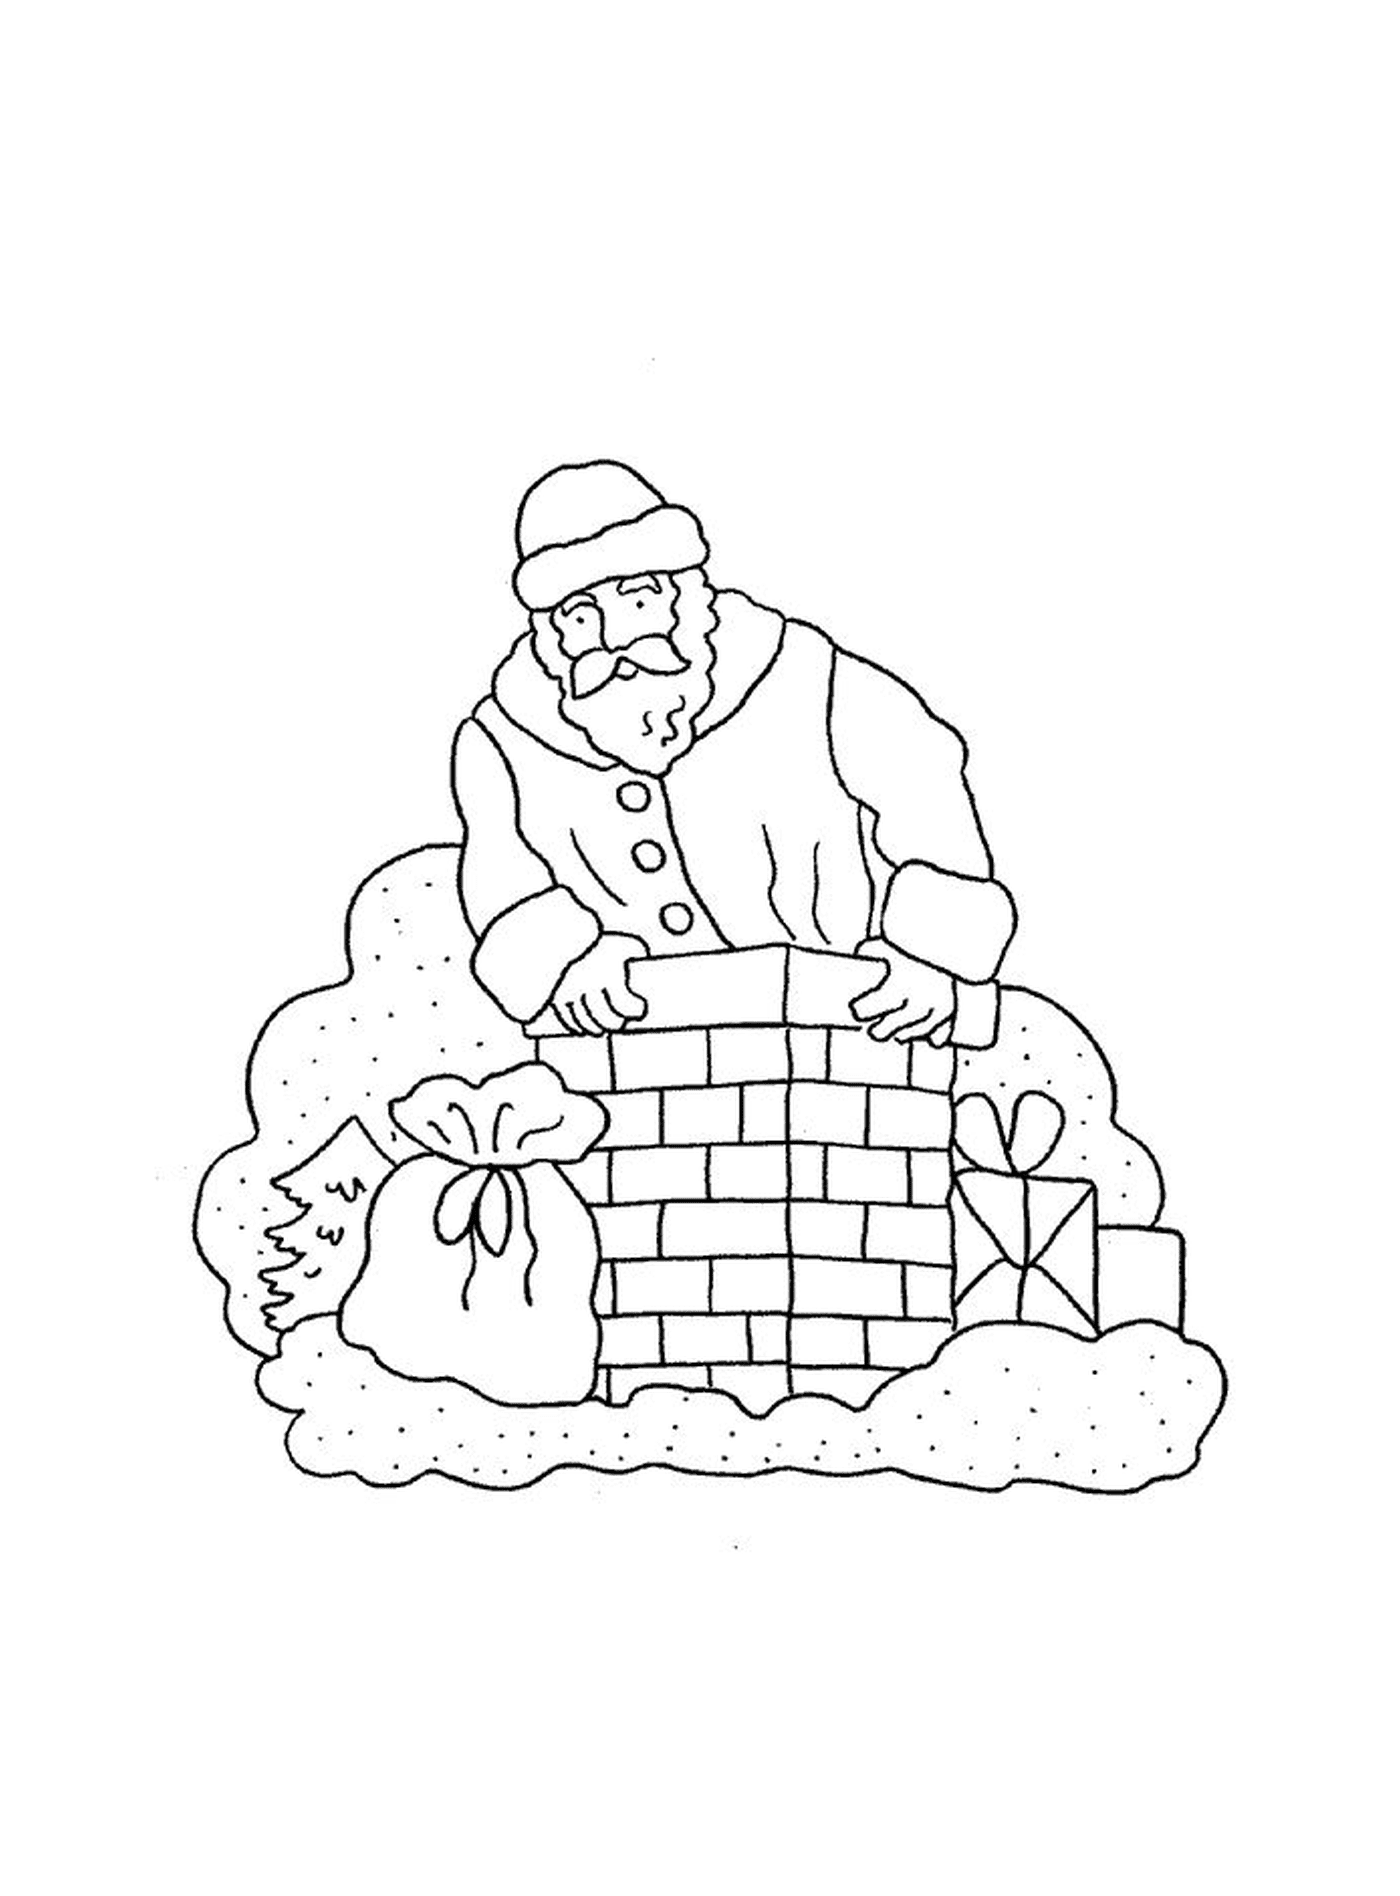  Santa's construyendo una chimenea 